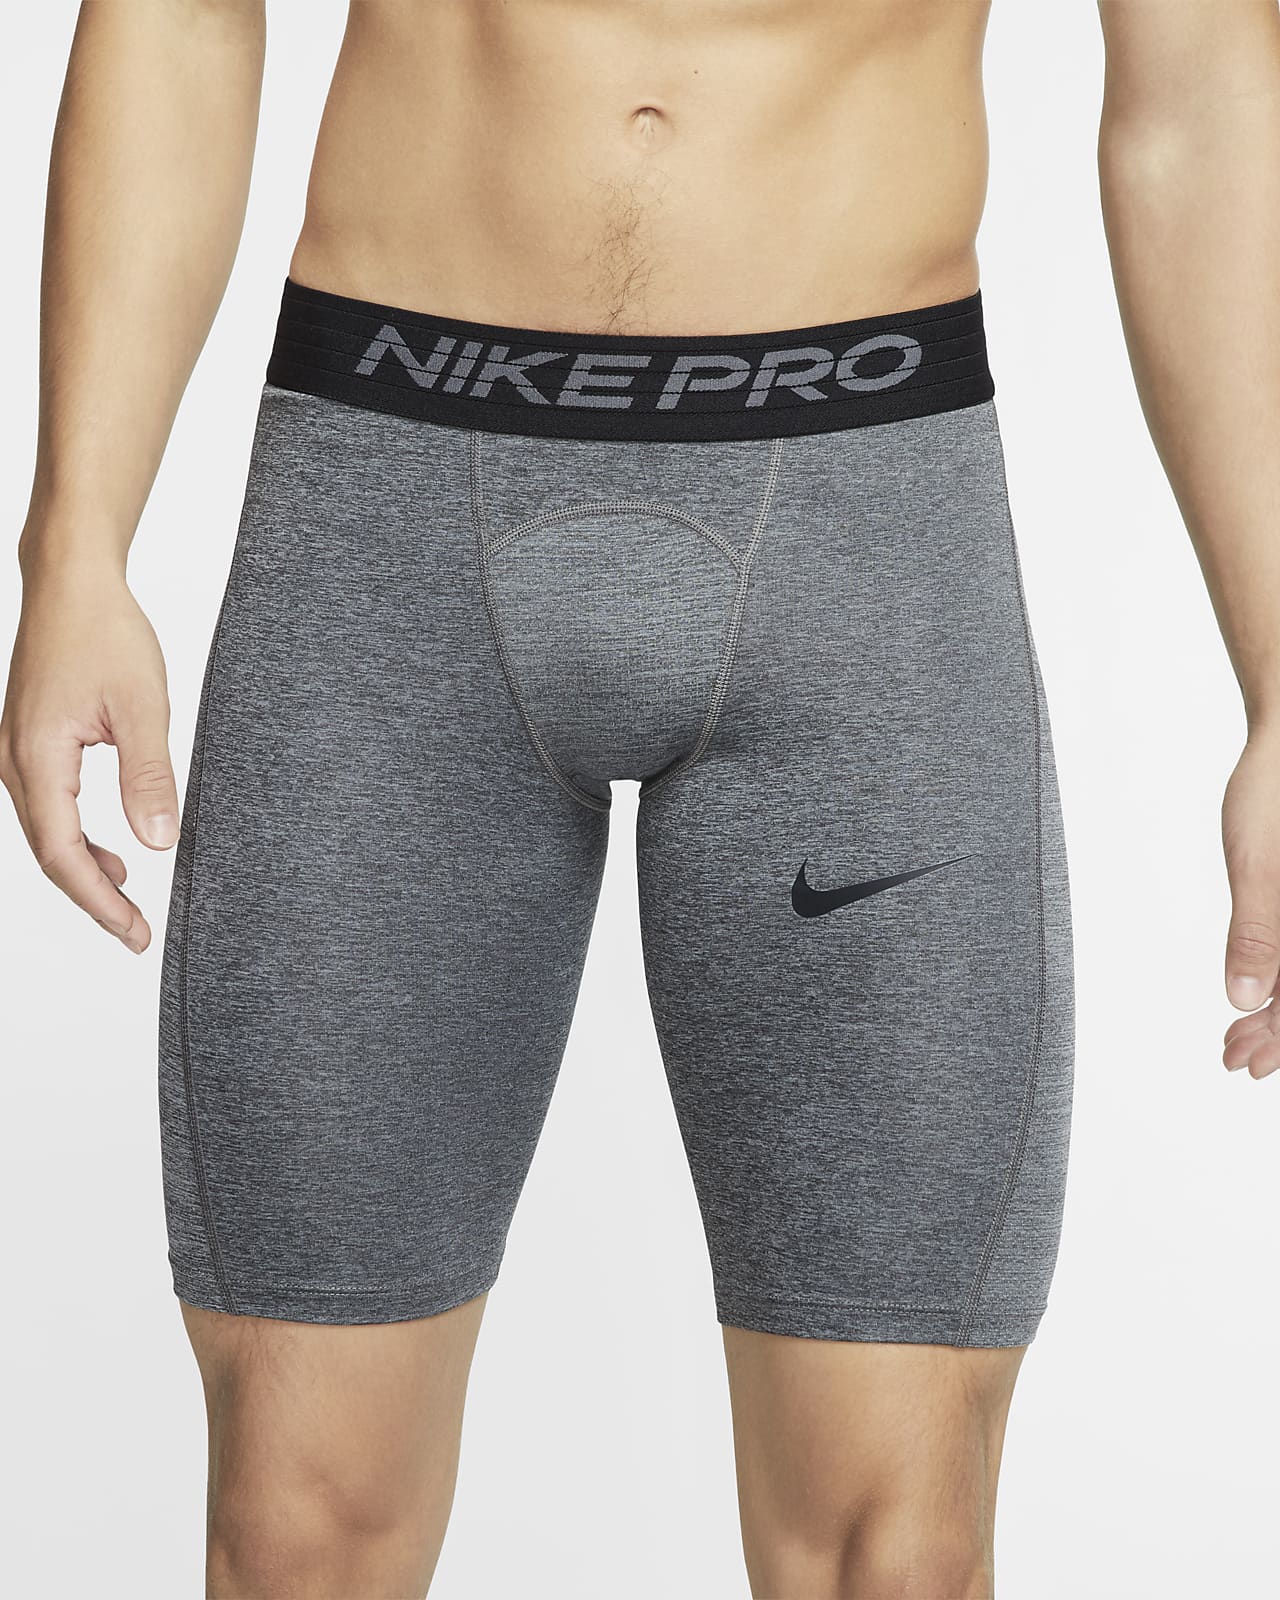 nike pro men's long shorts